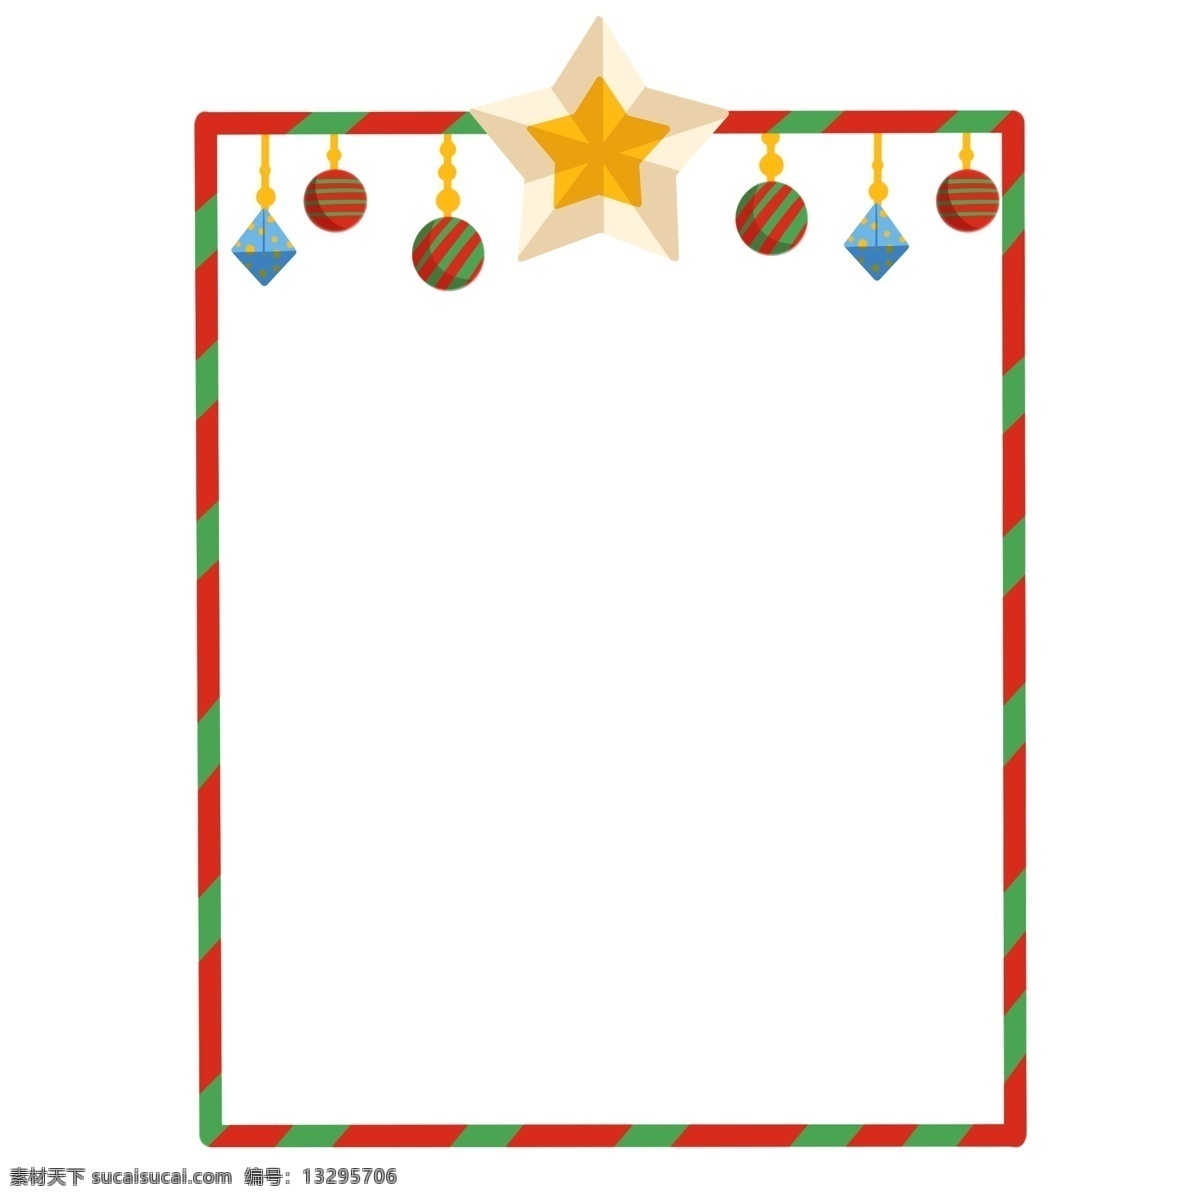 圣诞节 圣诞树 边框 黄色的边框 红色的小花 黄色的五角星 漂亮的边框 插画 绿色的圣诞树